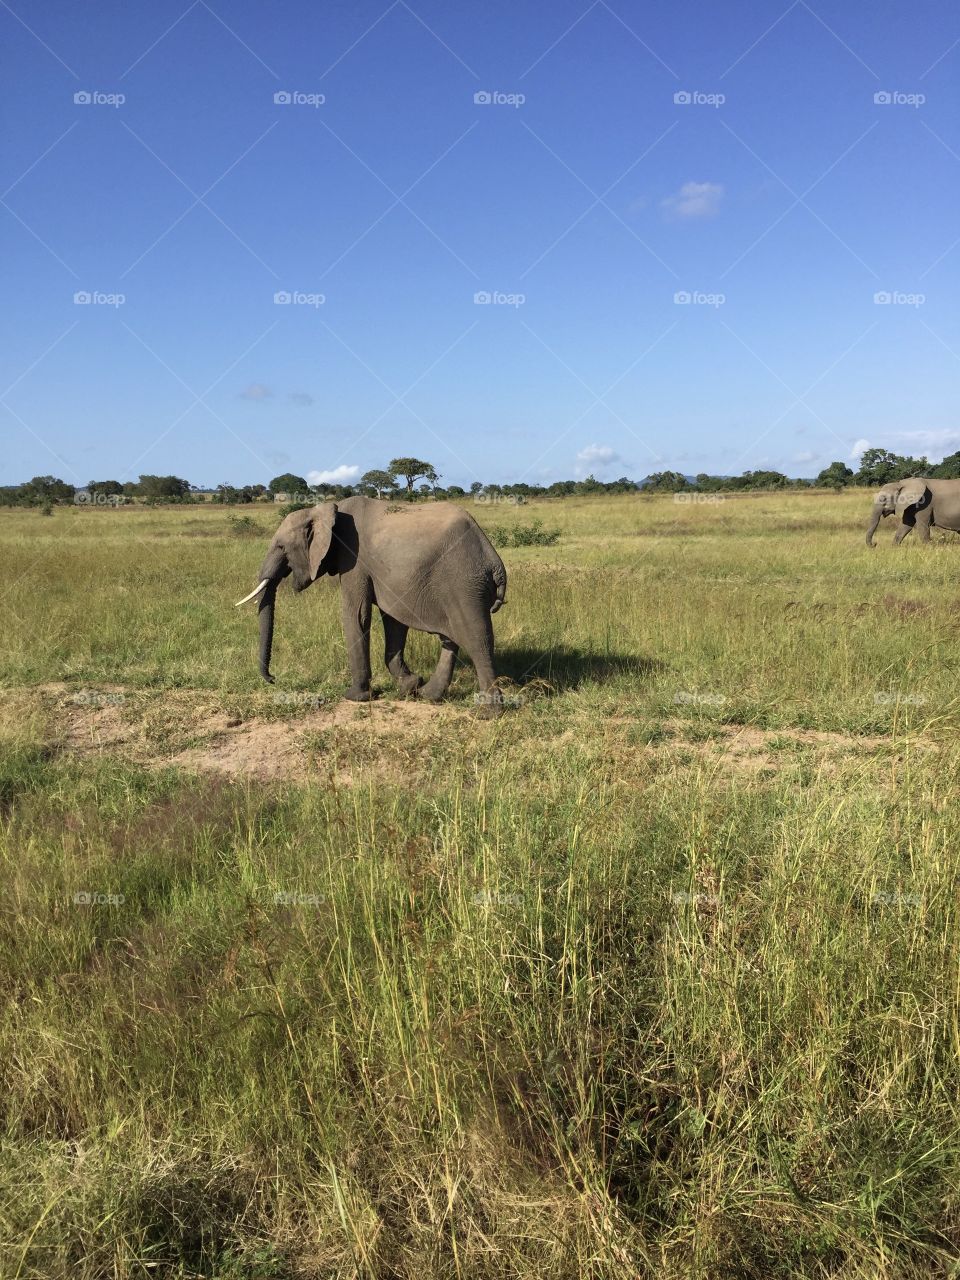 African elephant in mikumi national park Tanzania 🇹🇿